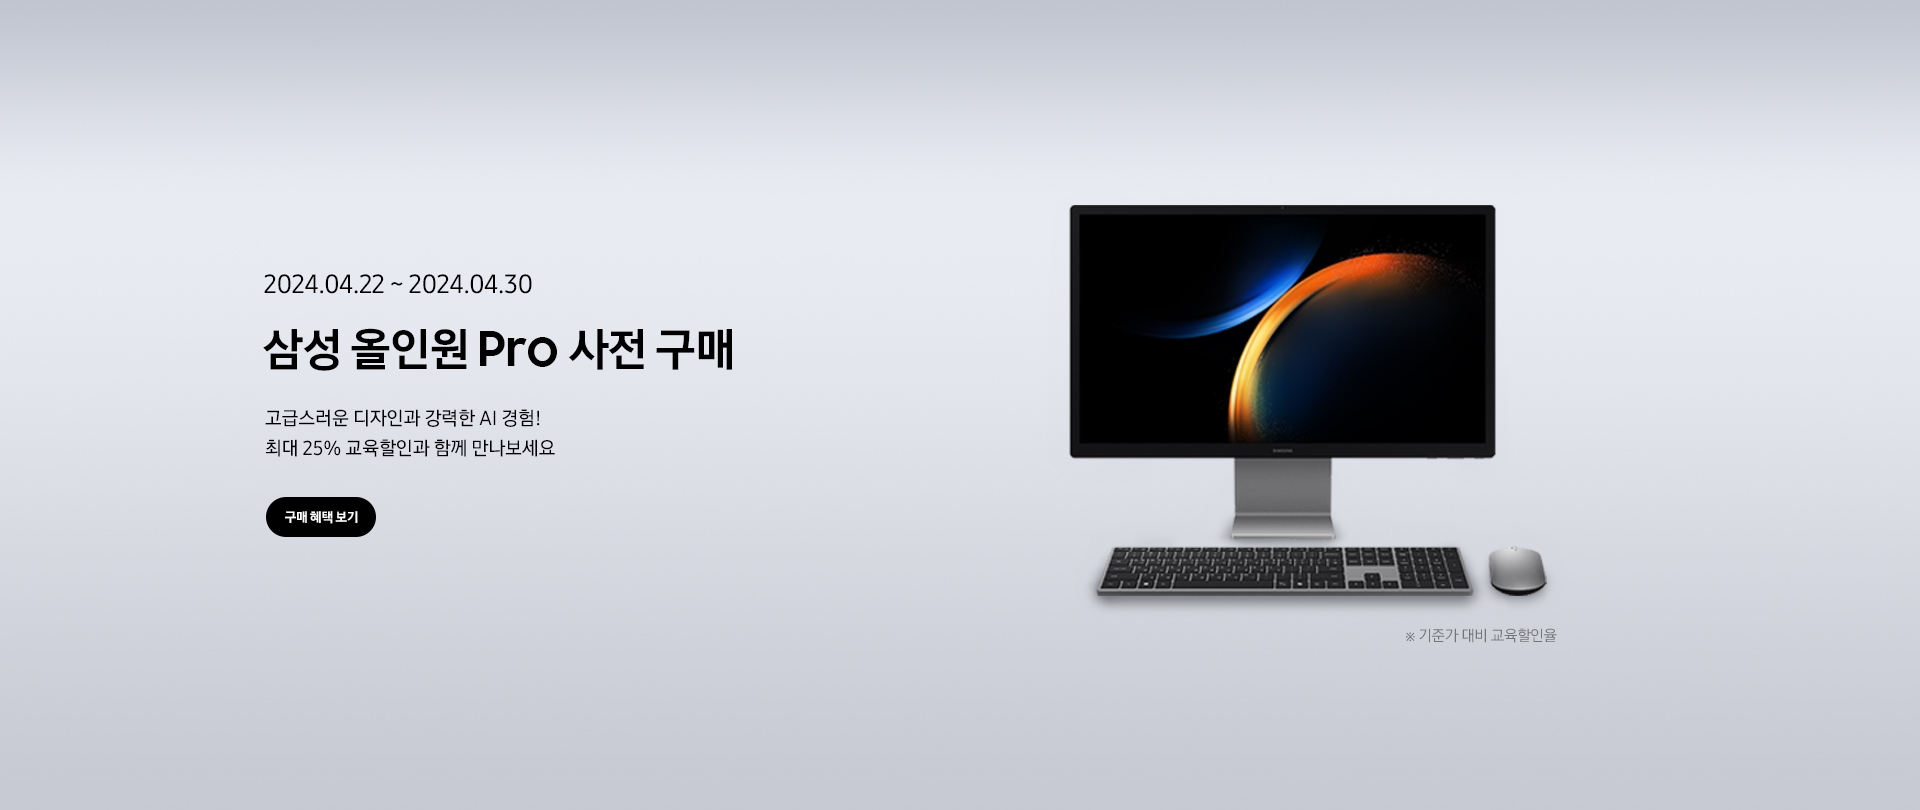 삼성 올인원 Pro